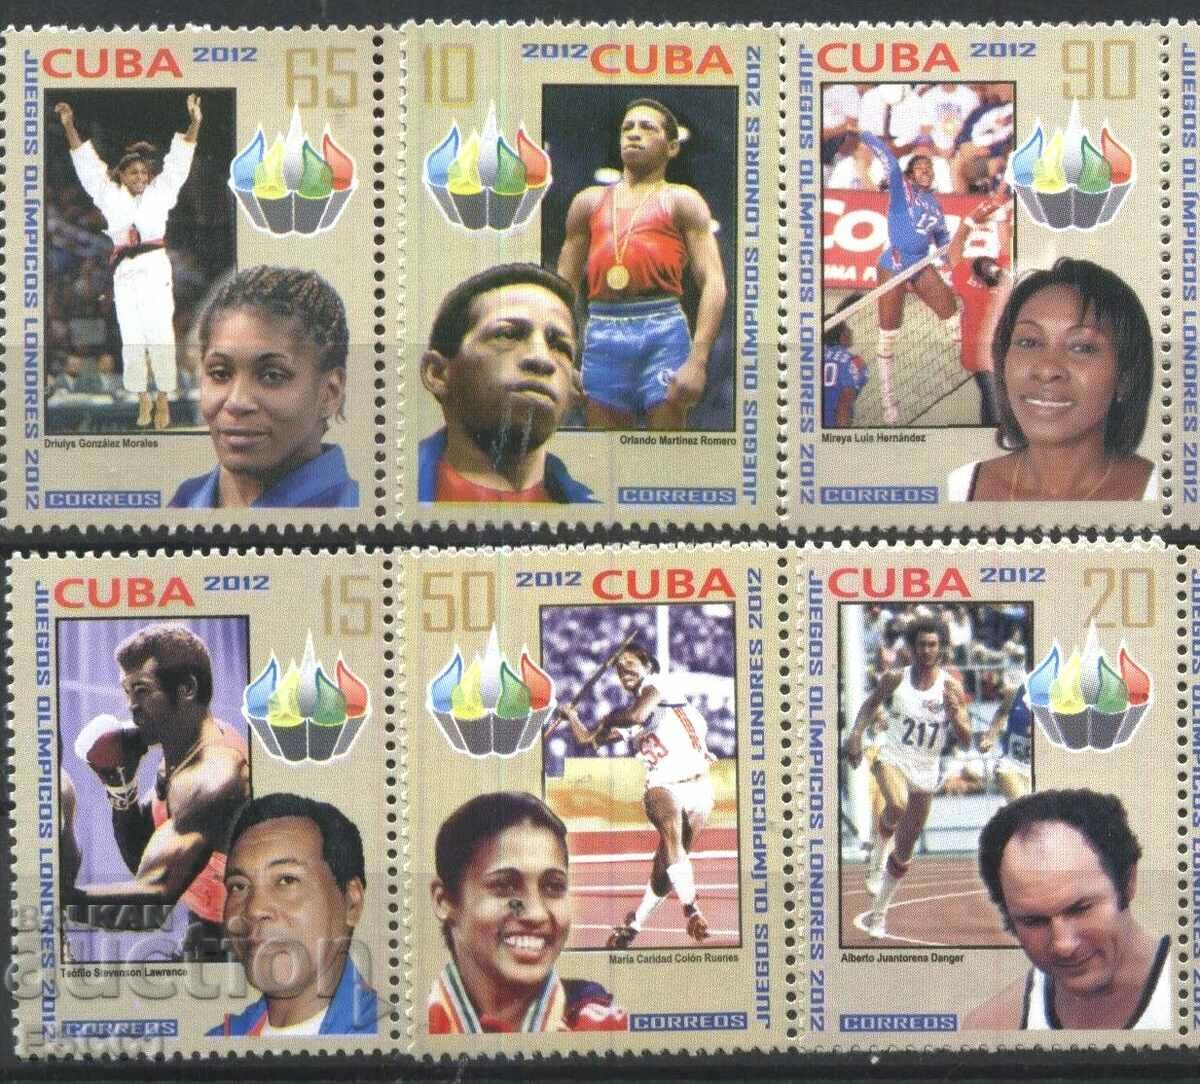 Pure marchează Jocurile Olimpice Sportive Londra 2012 din Cuba